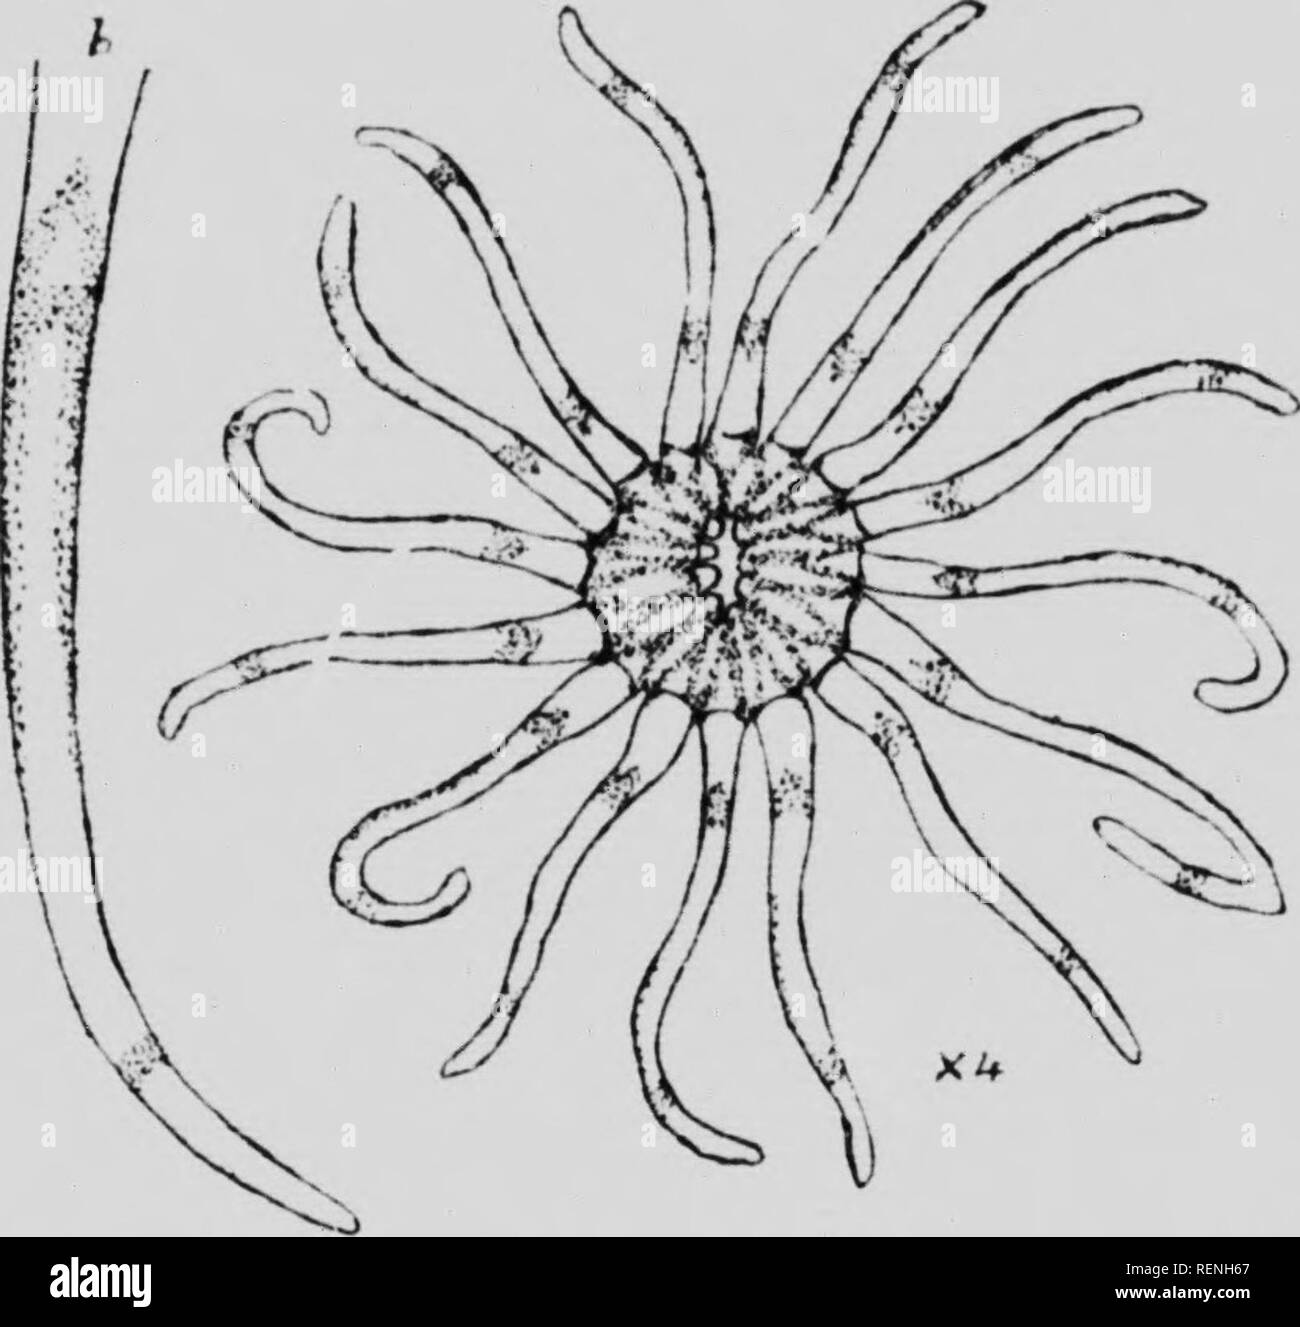 . Mollusks, Echnioderms, Coelenterates, etc. Part G [microform] : Alcyonaria and Actinaria. Canadian Arctic Expedition (1913-1918); Canadian Arctic Expedition (1913-1918); Sea anemones; Alcyonaires; Anémones de mer; Octocorallia. IHO &lt;; Ctniuditiii A Kill- tixiKilitiiJii. mi.s nns 'I'lic central ciiali'd pditioii or scapiis was slijilitly s'llcutiil ami tiaiisvcrsclv wrinkli.l; cpiderinal cuatiiifi was liriiily adlirrciit, pale oraiiiic-Imiwn, nr iliri- lirow II. Tciitaclcs 1(1. Idiifr, sli'iidir, vt-ry nioliilc, variously I'lirvcd. soiiictiiiics spirally, ami oftrii rcciirM'd. up to 10 to  Stock Photo